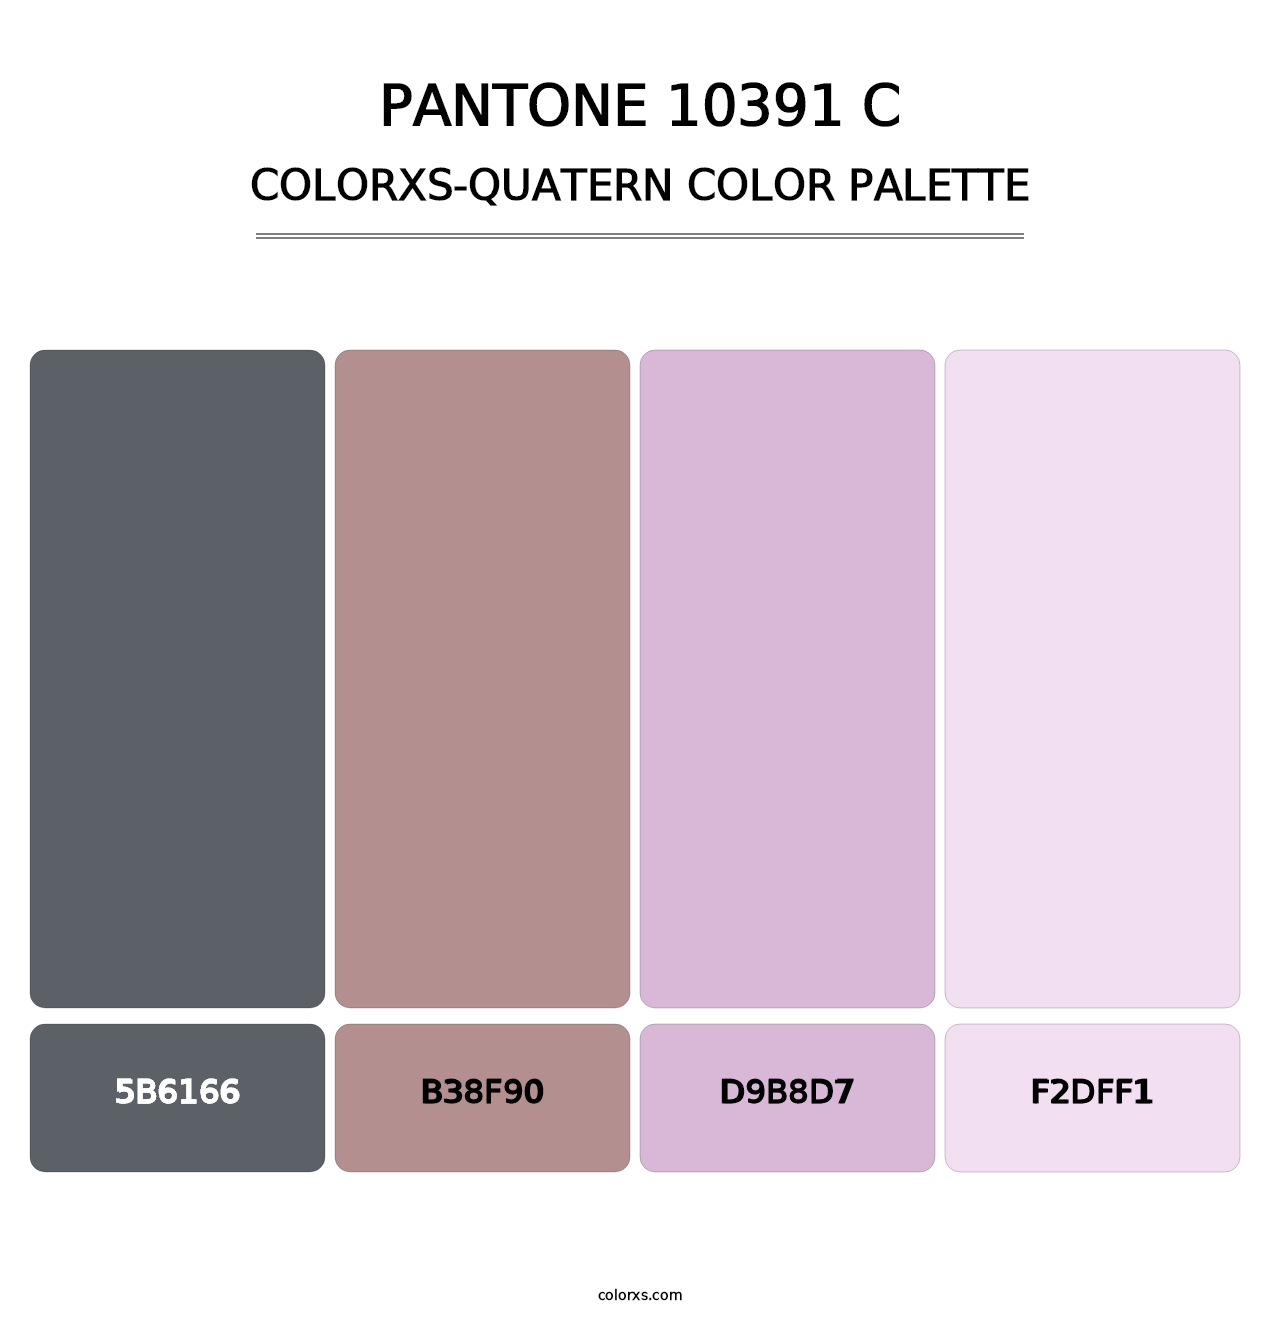 PANTONE 10391 C - Colorxs Quatern Palette